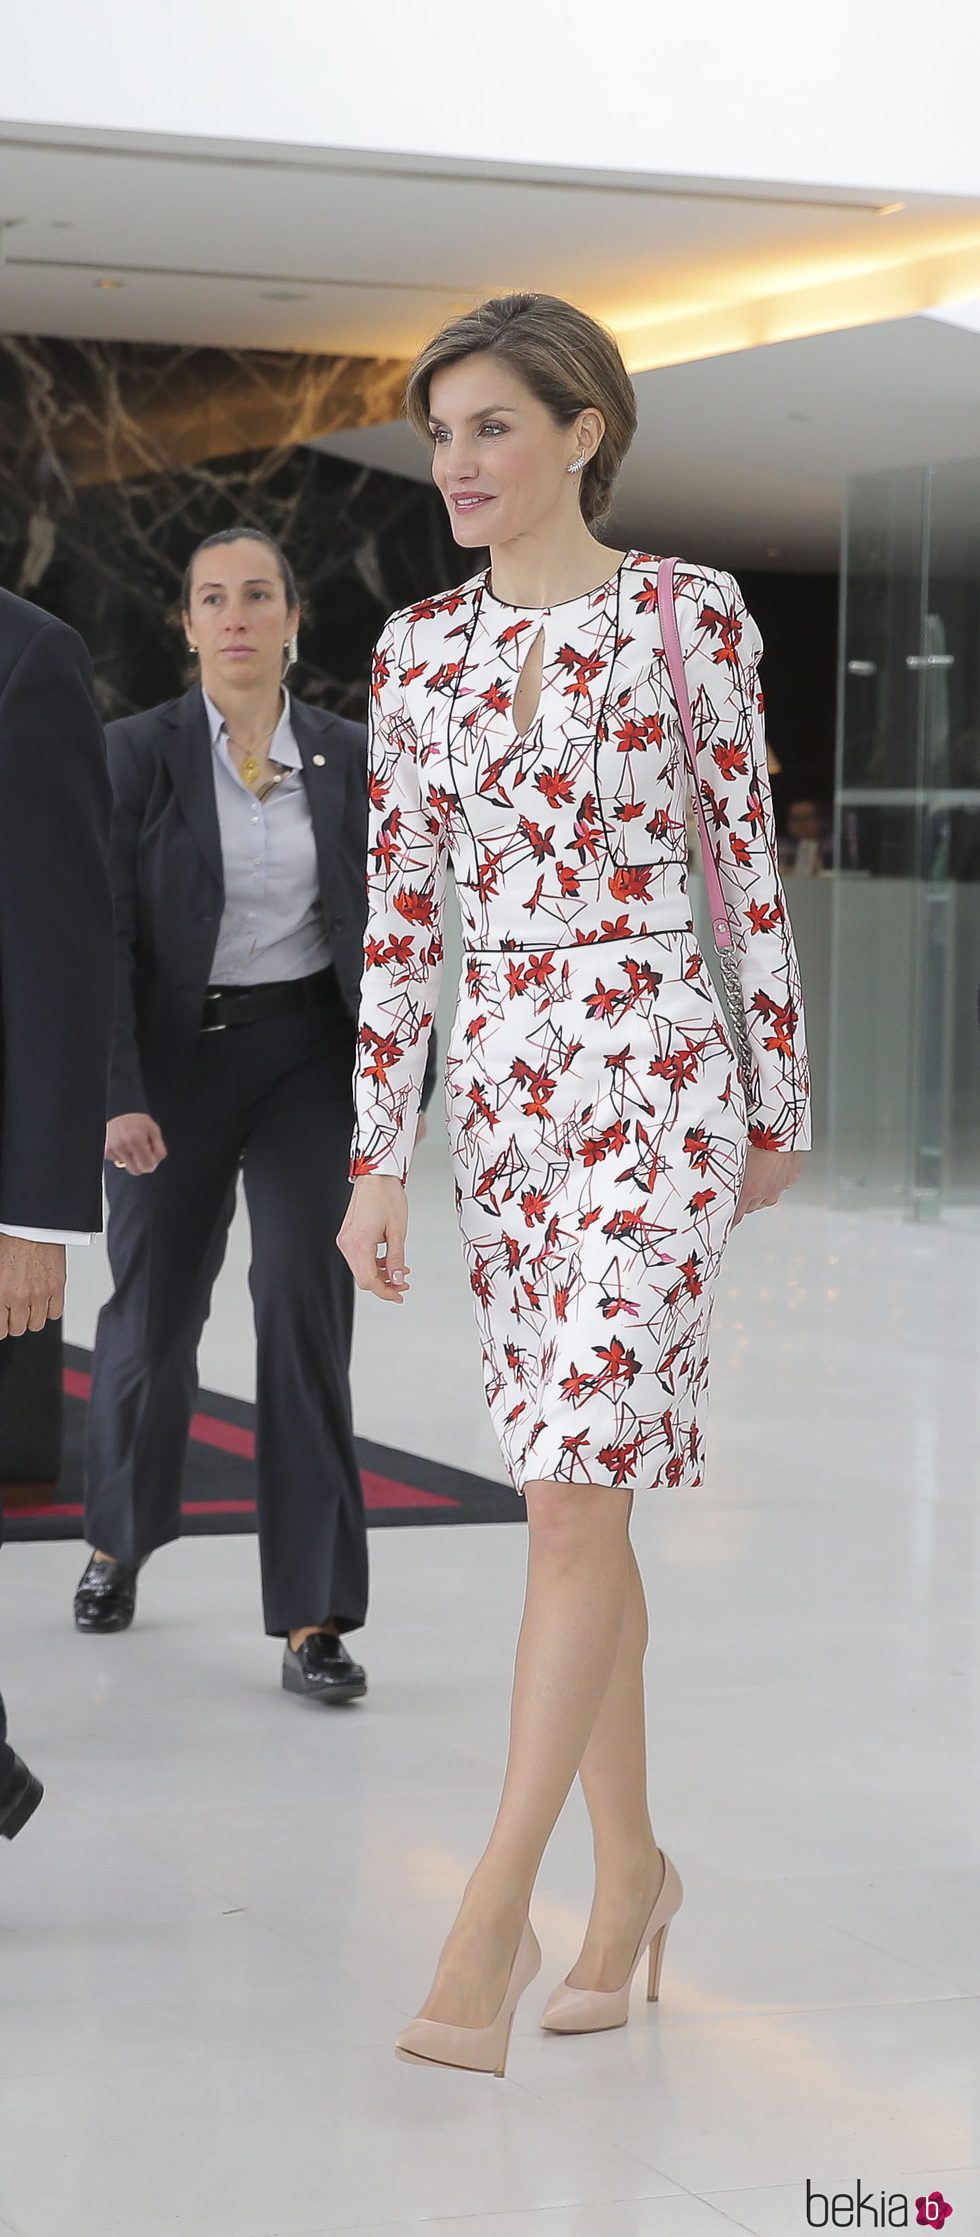 La Reina Letizia con un vestido floral en Portugal